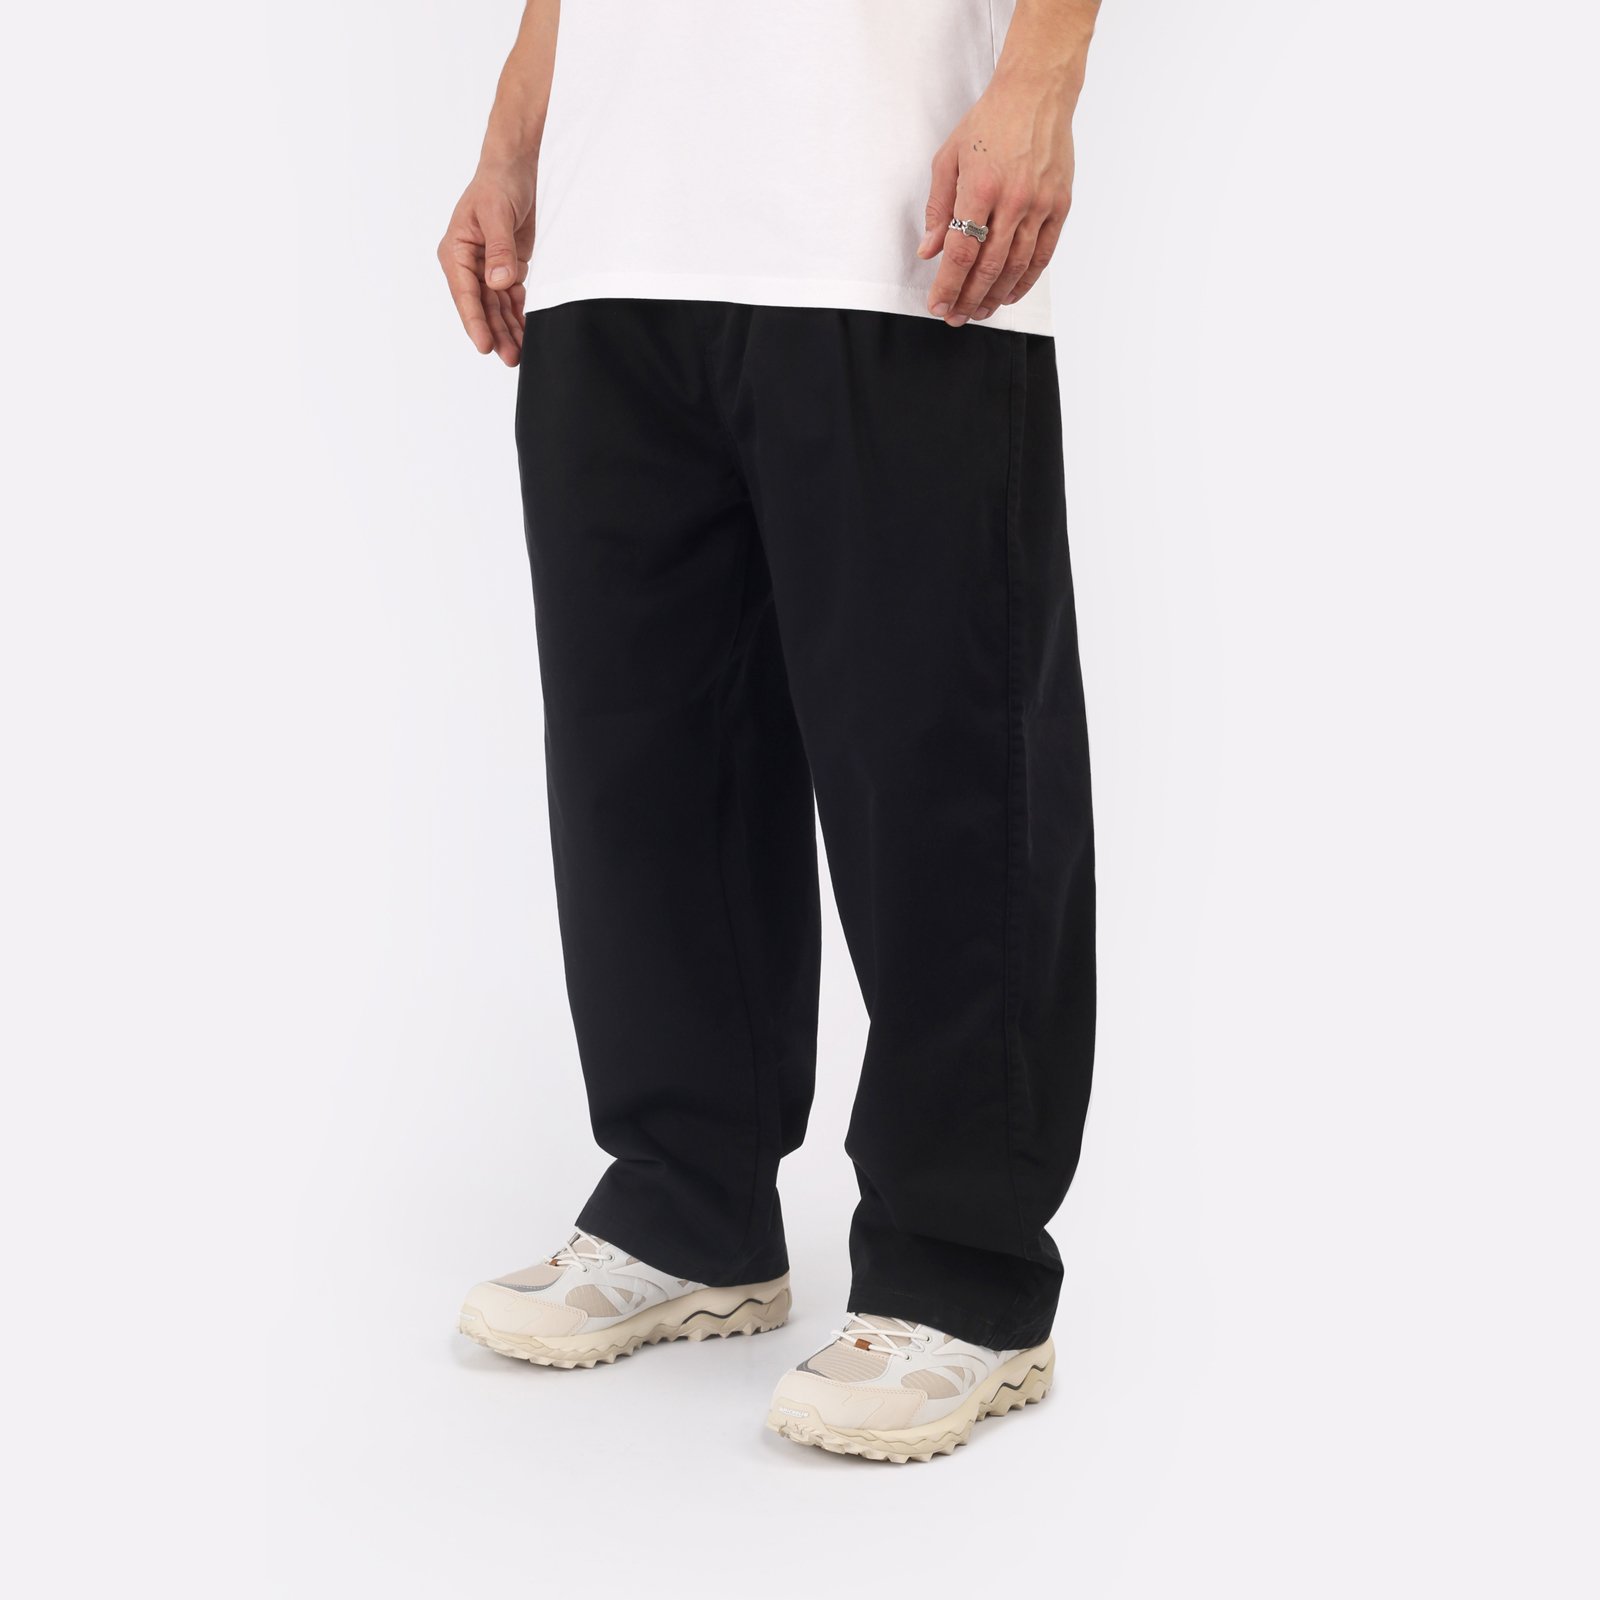 мужские брюки Carhartt WIP Marv Pant  (I033129-black)  - цена, описание, фото 3